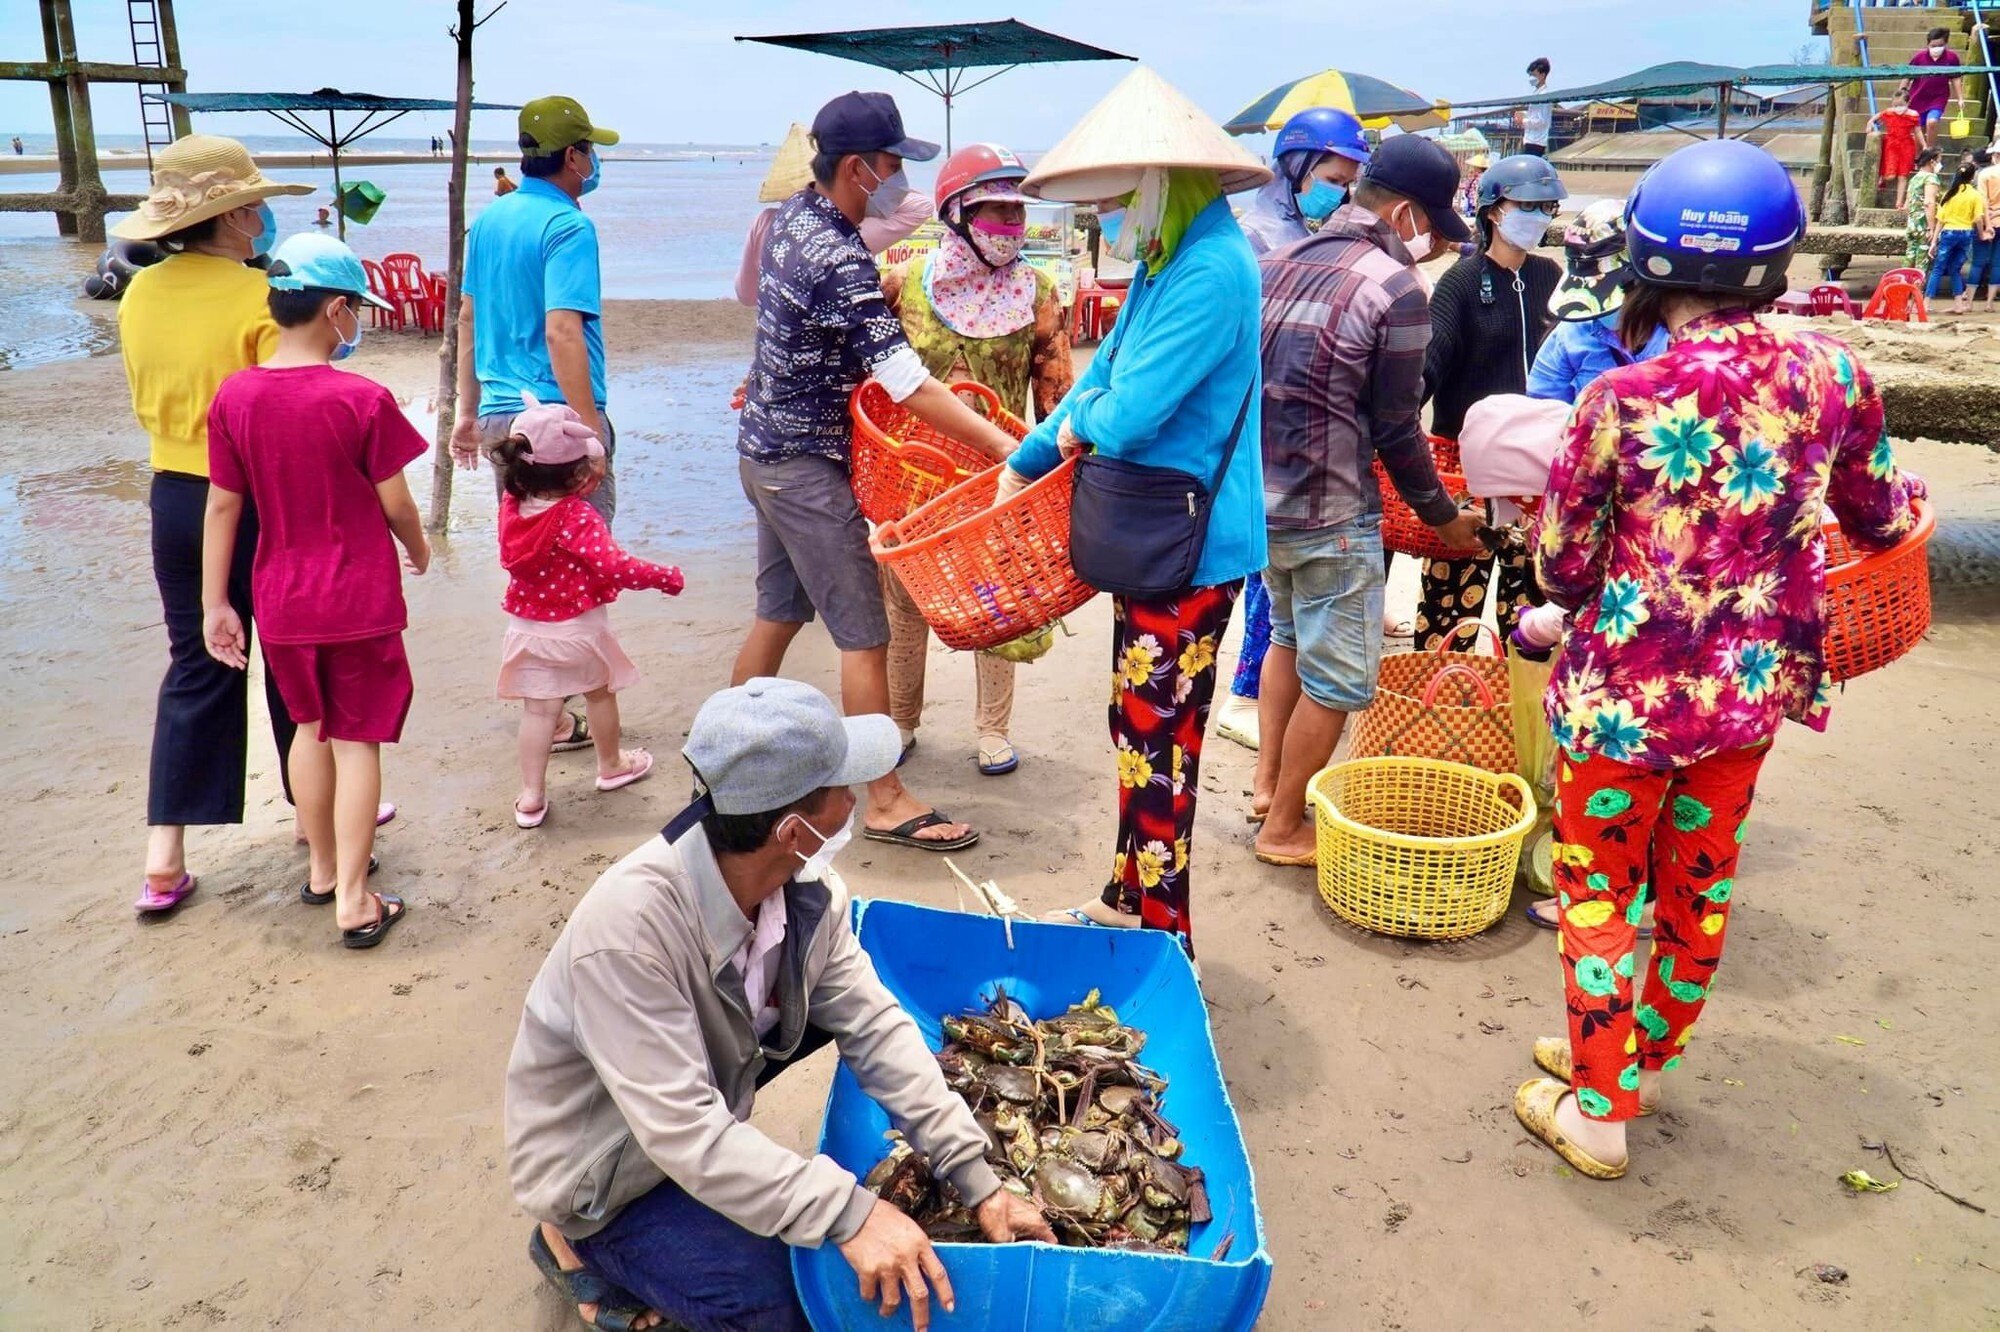 Chợ biển ở một huyện của Bến Tre họp ngay mép sóng, mua bán la liệt tôm, cua, cá, ốc ngon, lạ mắt- Ảnh 8.